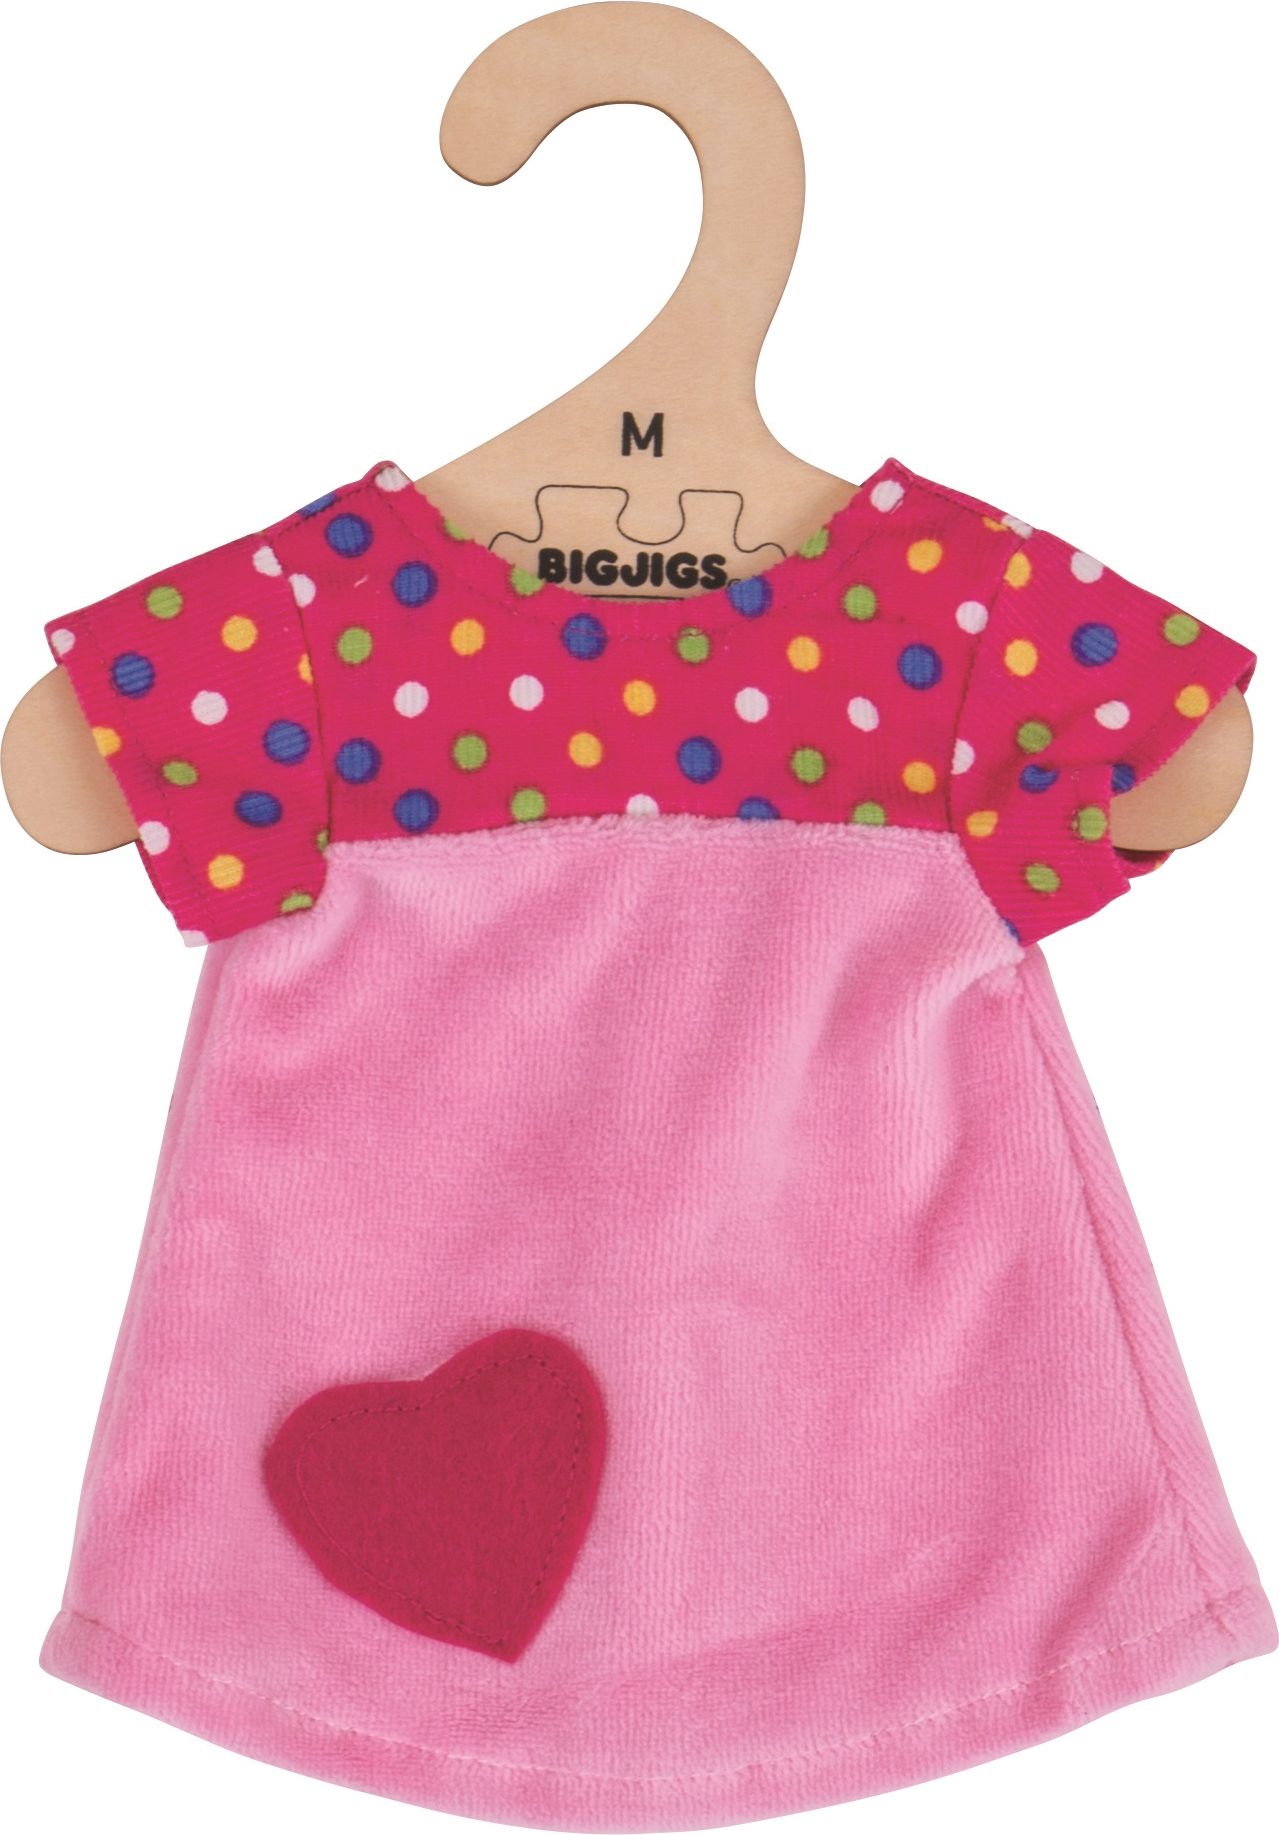 Bigjigs Toys Růžové tričko se srdíčkem pro panenku 34 cm - obrázek 1